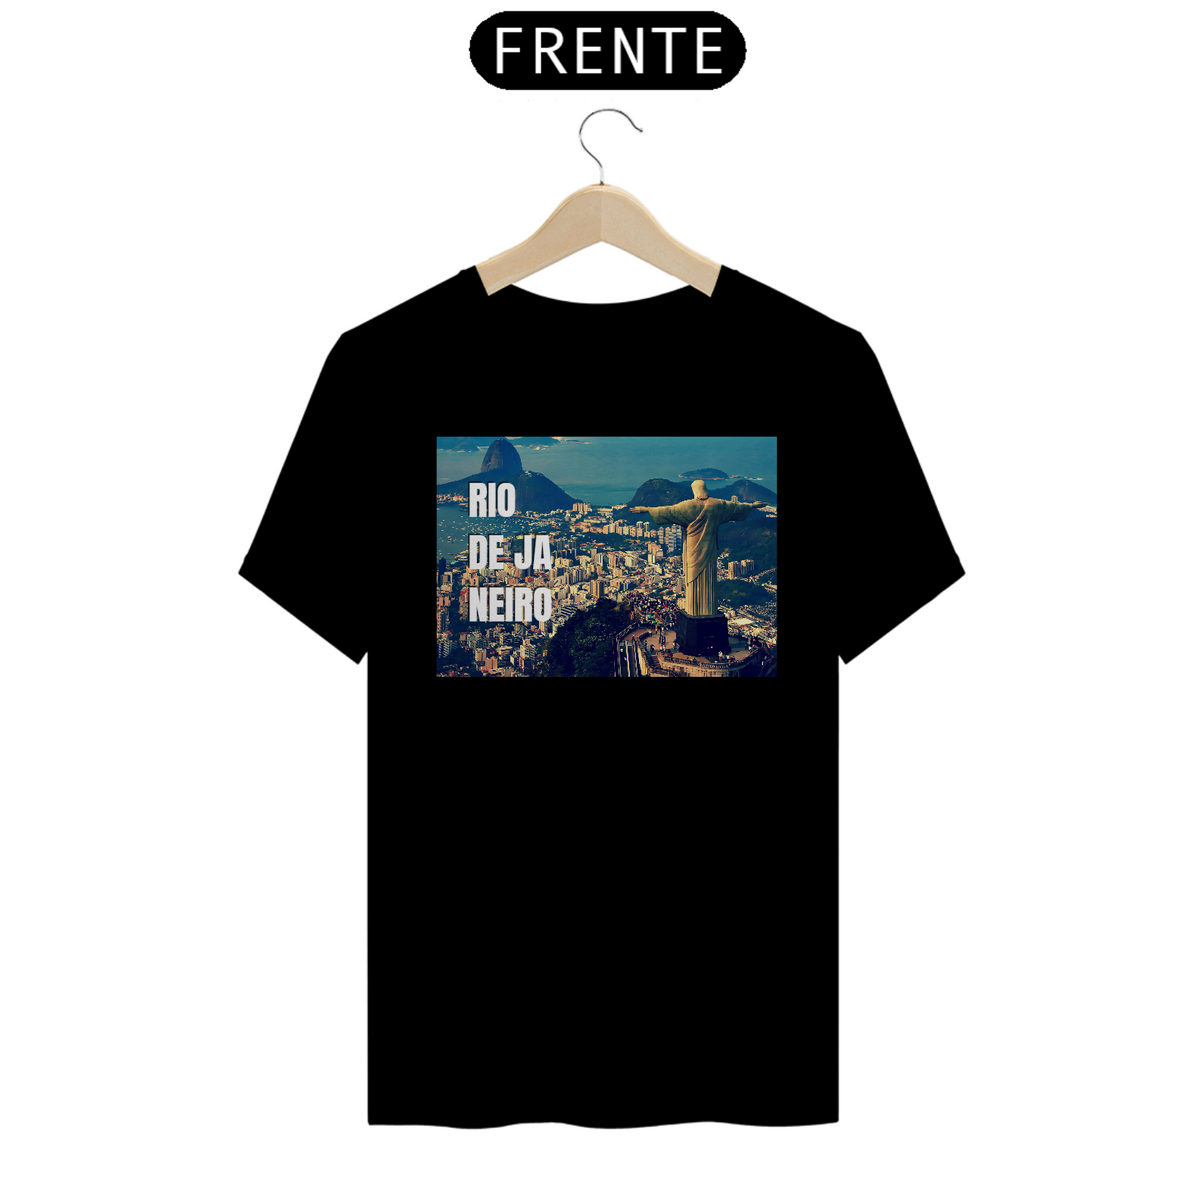 Nome do produto: Camiseta Rio de Janeiro